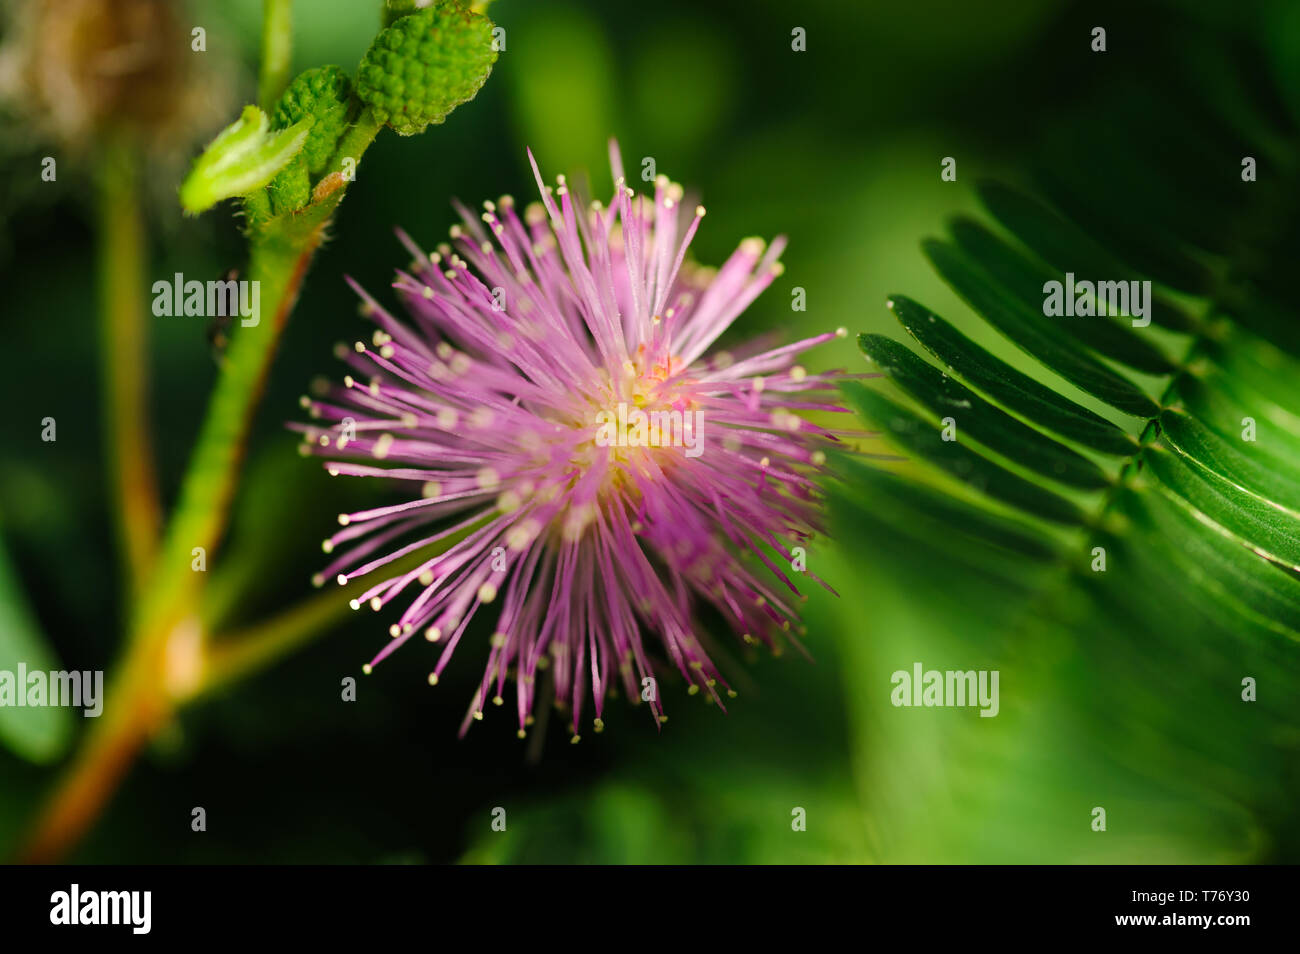 Chiudere l immagine del fiore mimosa isolata contro lo sfondo con sharp ricca colorfull e dettagli contrasty Foto Stock